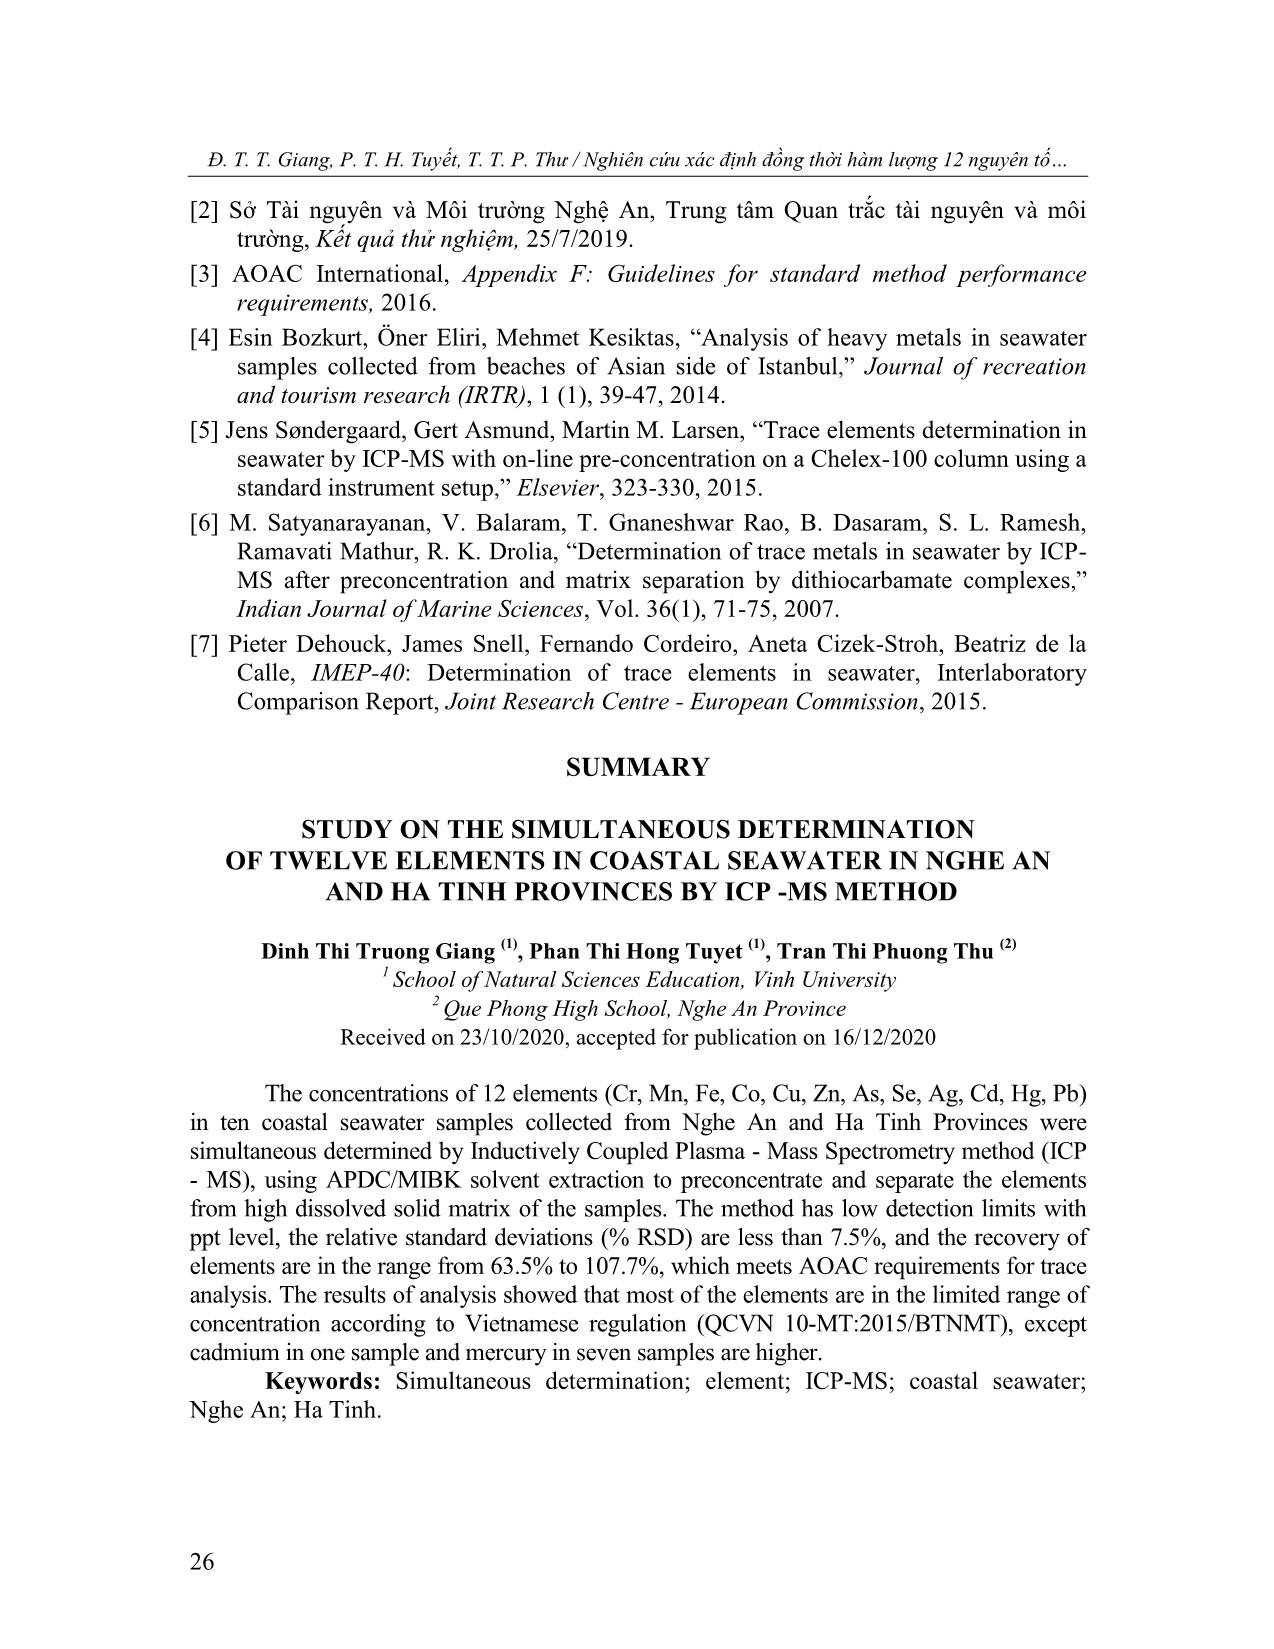 Nghiên cứu xác định đồng thời hàm lượng 12 nguyên tố trong nước biển ven bờ ở Nghệ An và Hà Tĩnh bằng phương pháp ICP-MS trang 7